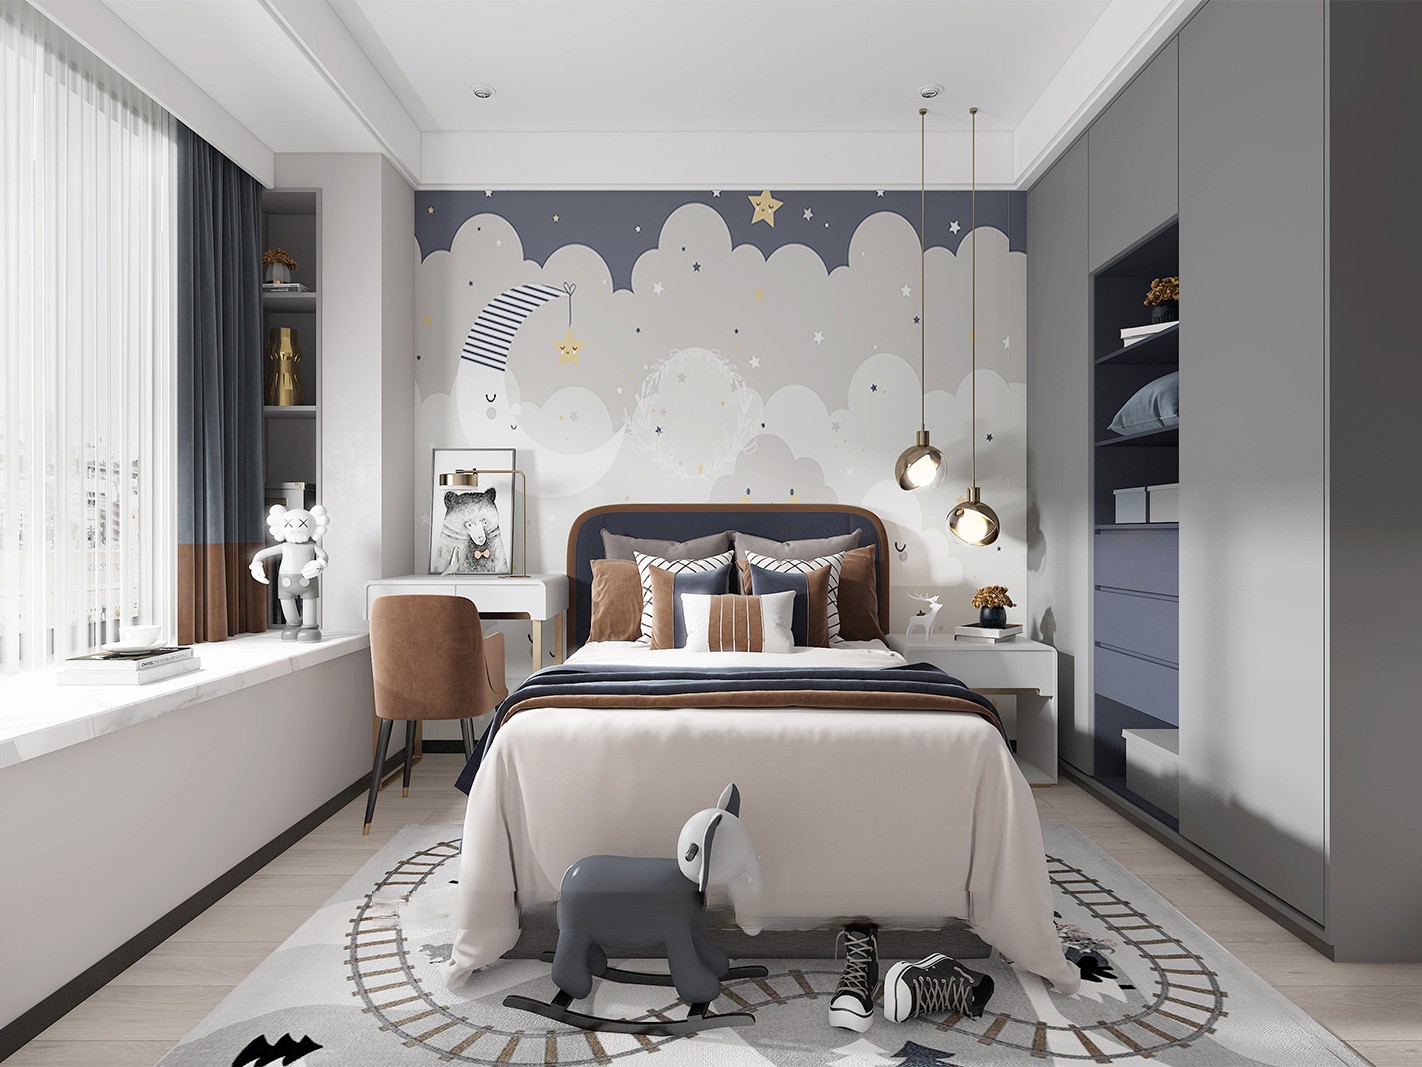 杨浦区世纪江湾150平现代轻奢风格复式卧室装修效果图